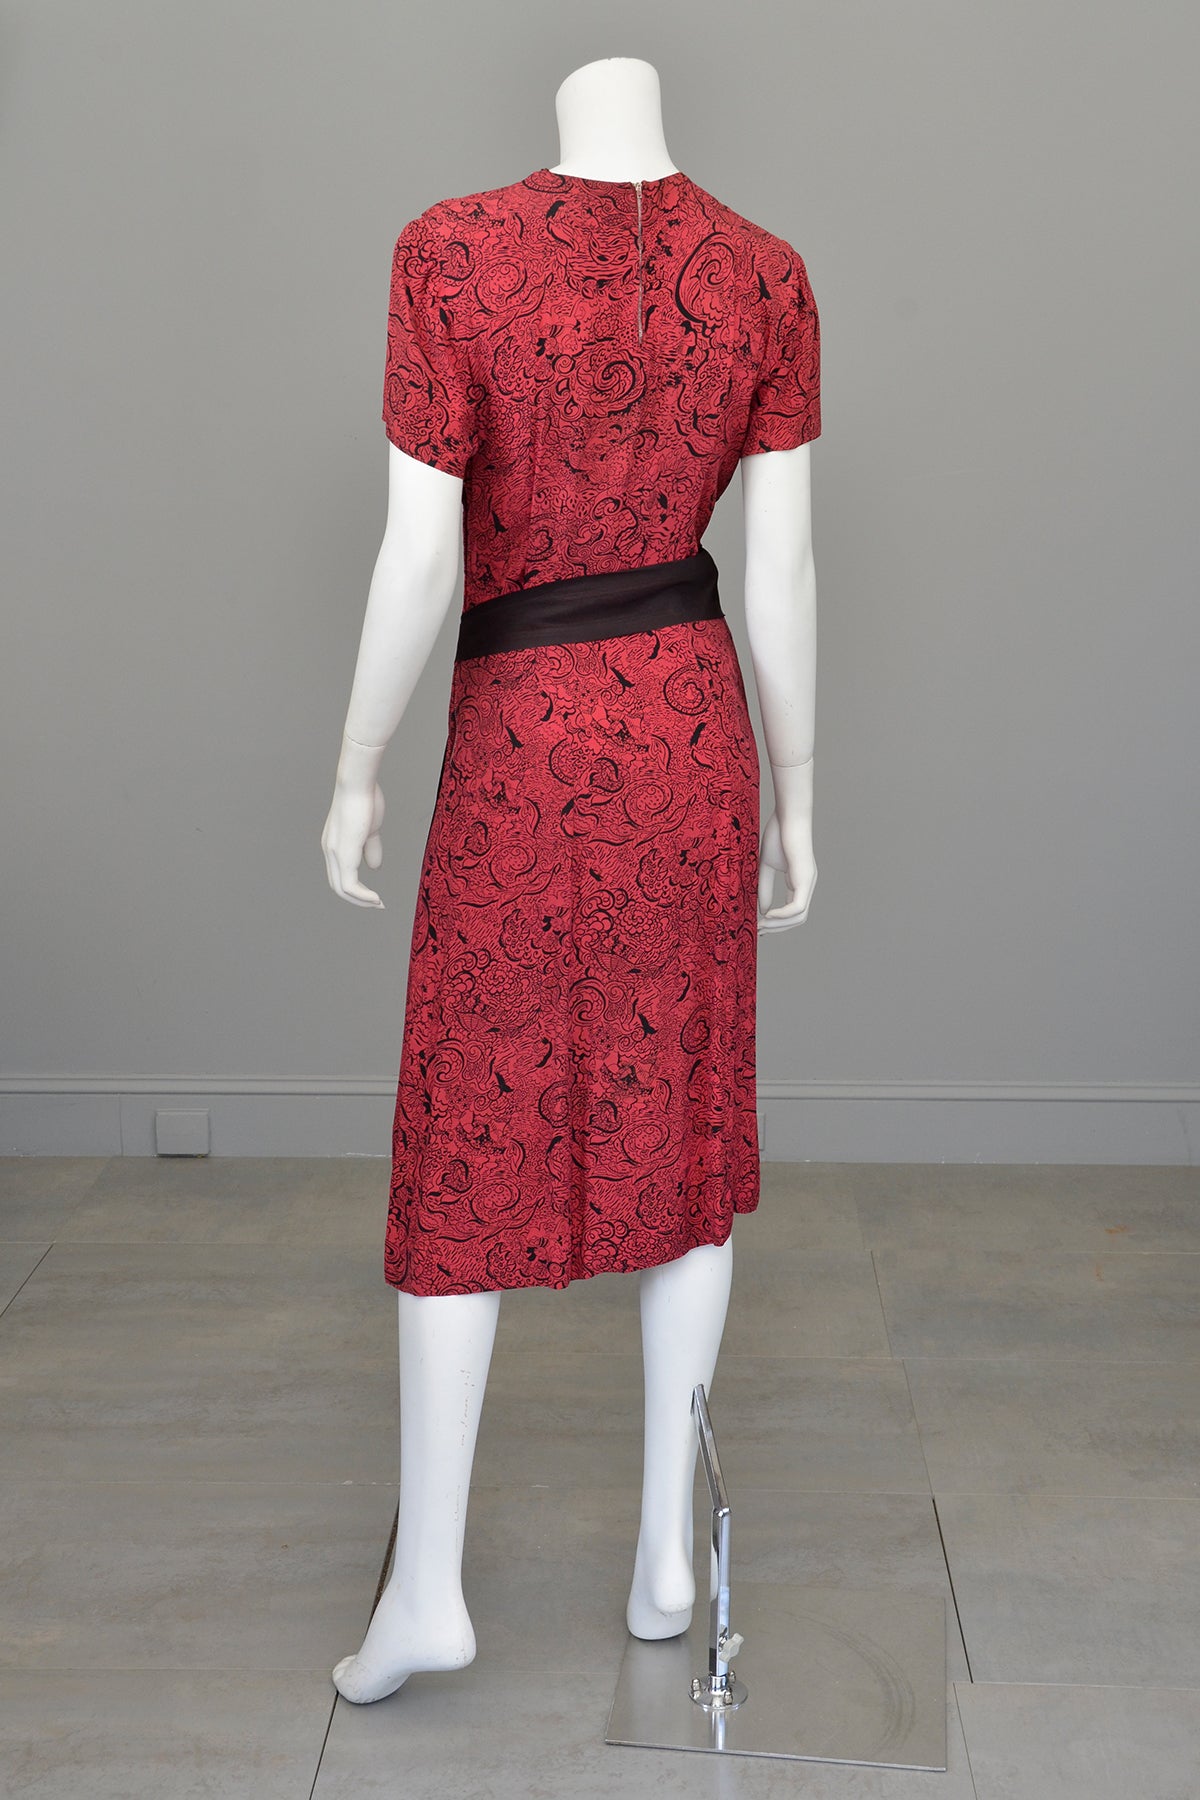 1940s Novelty Print Egyptian Revival Dress Red Black TLC